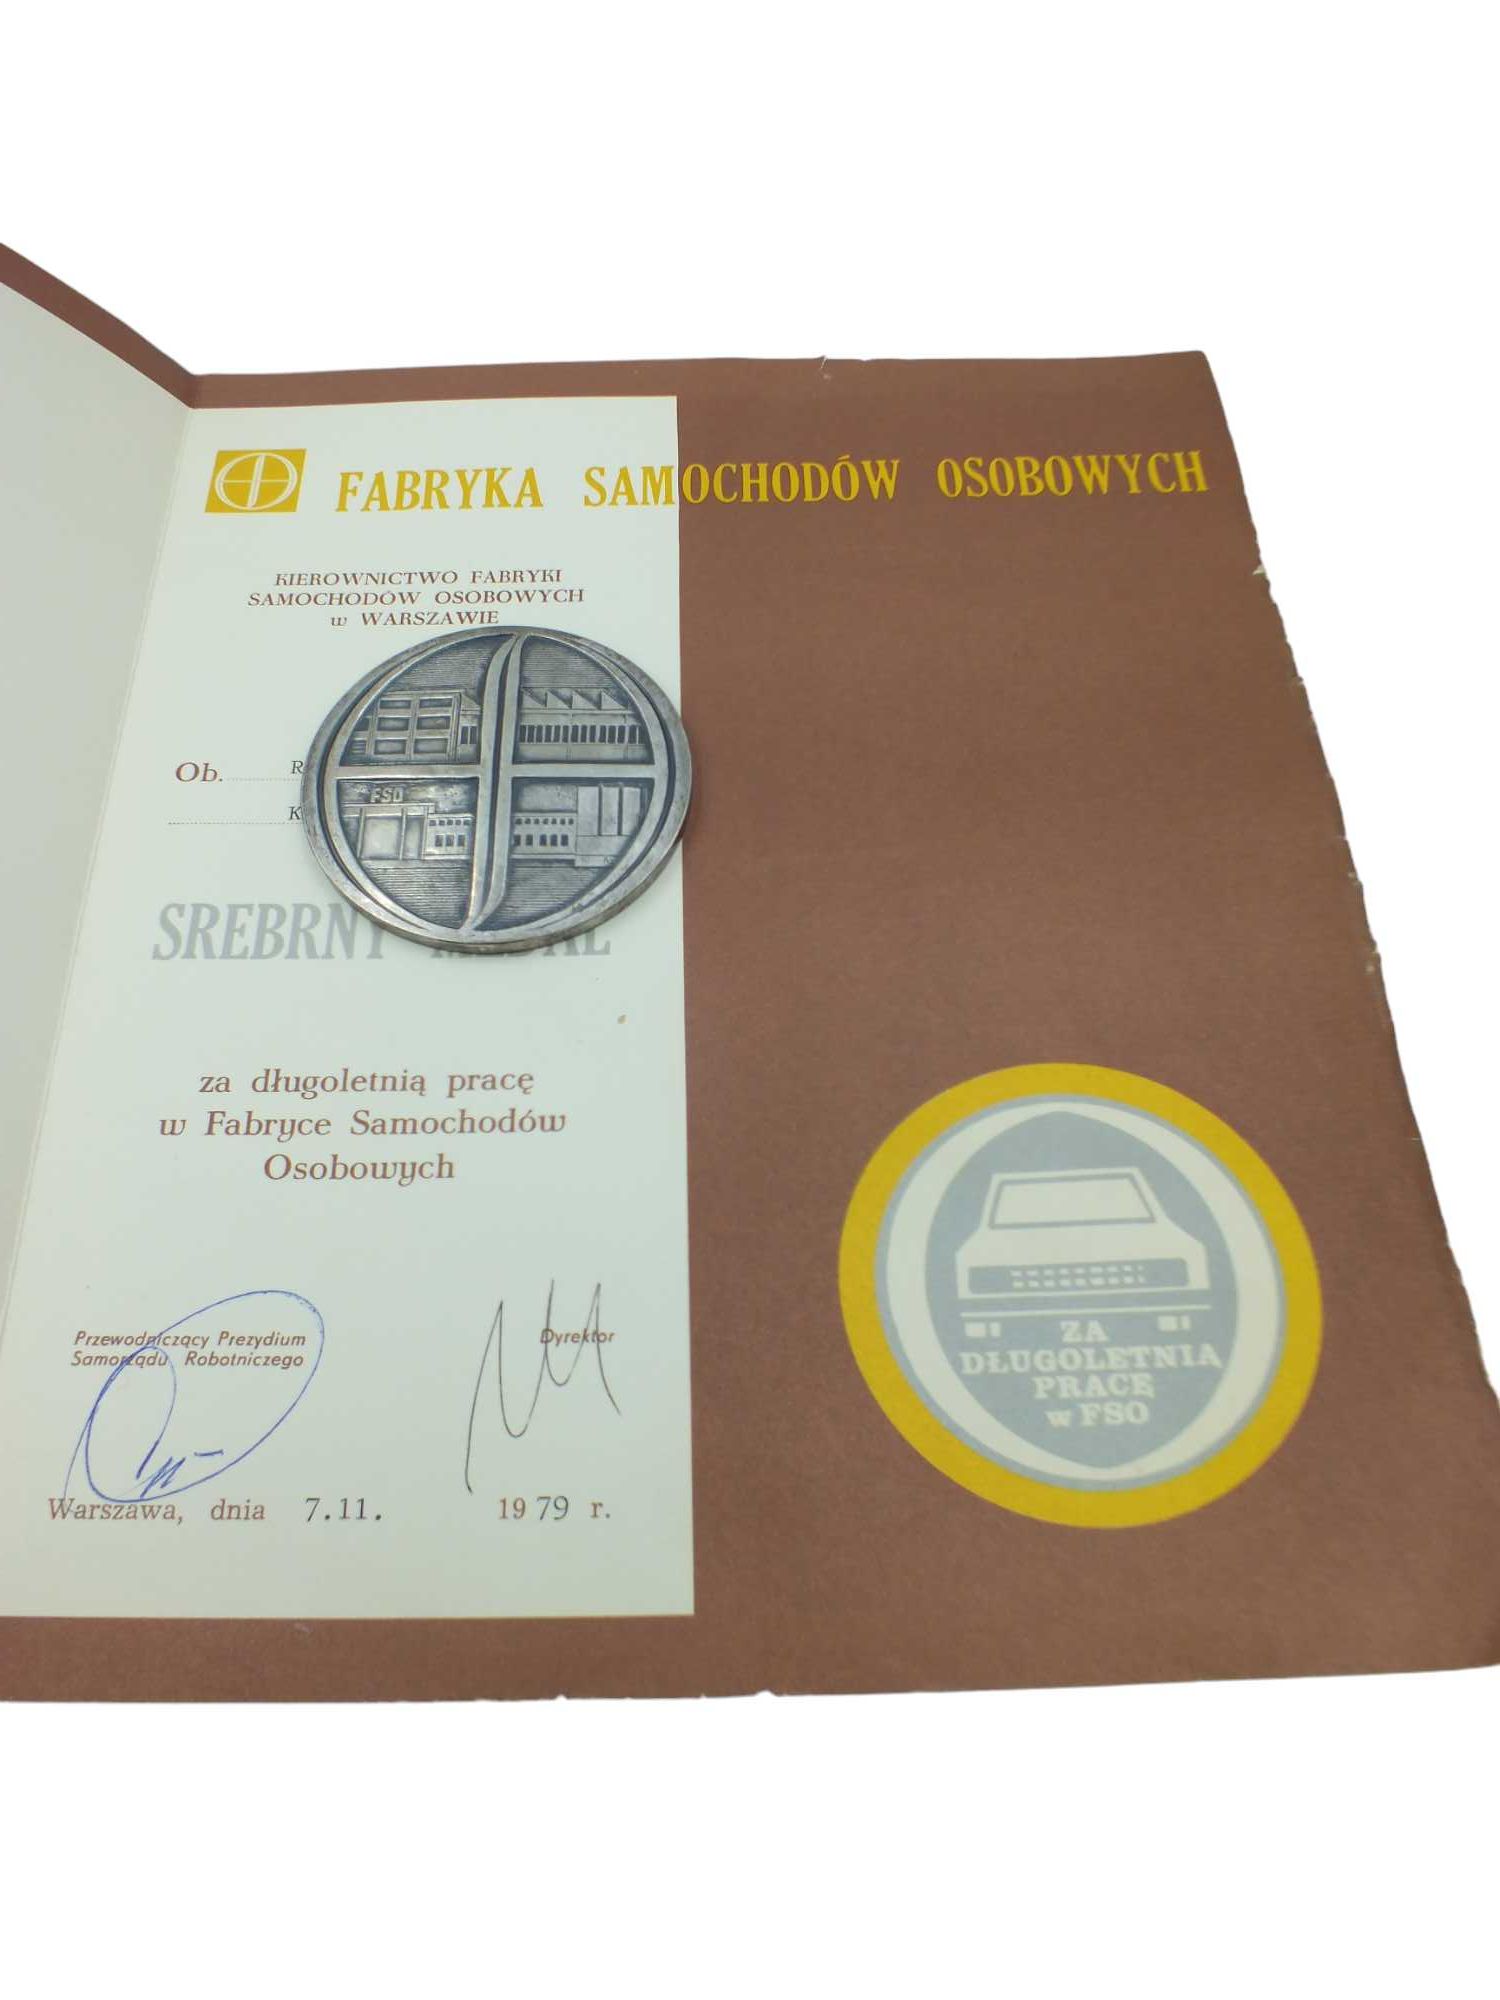 FSO WARSZAWA srebrny medal za długoletnią pracę  1979 r L